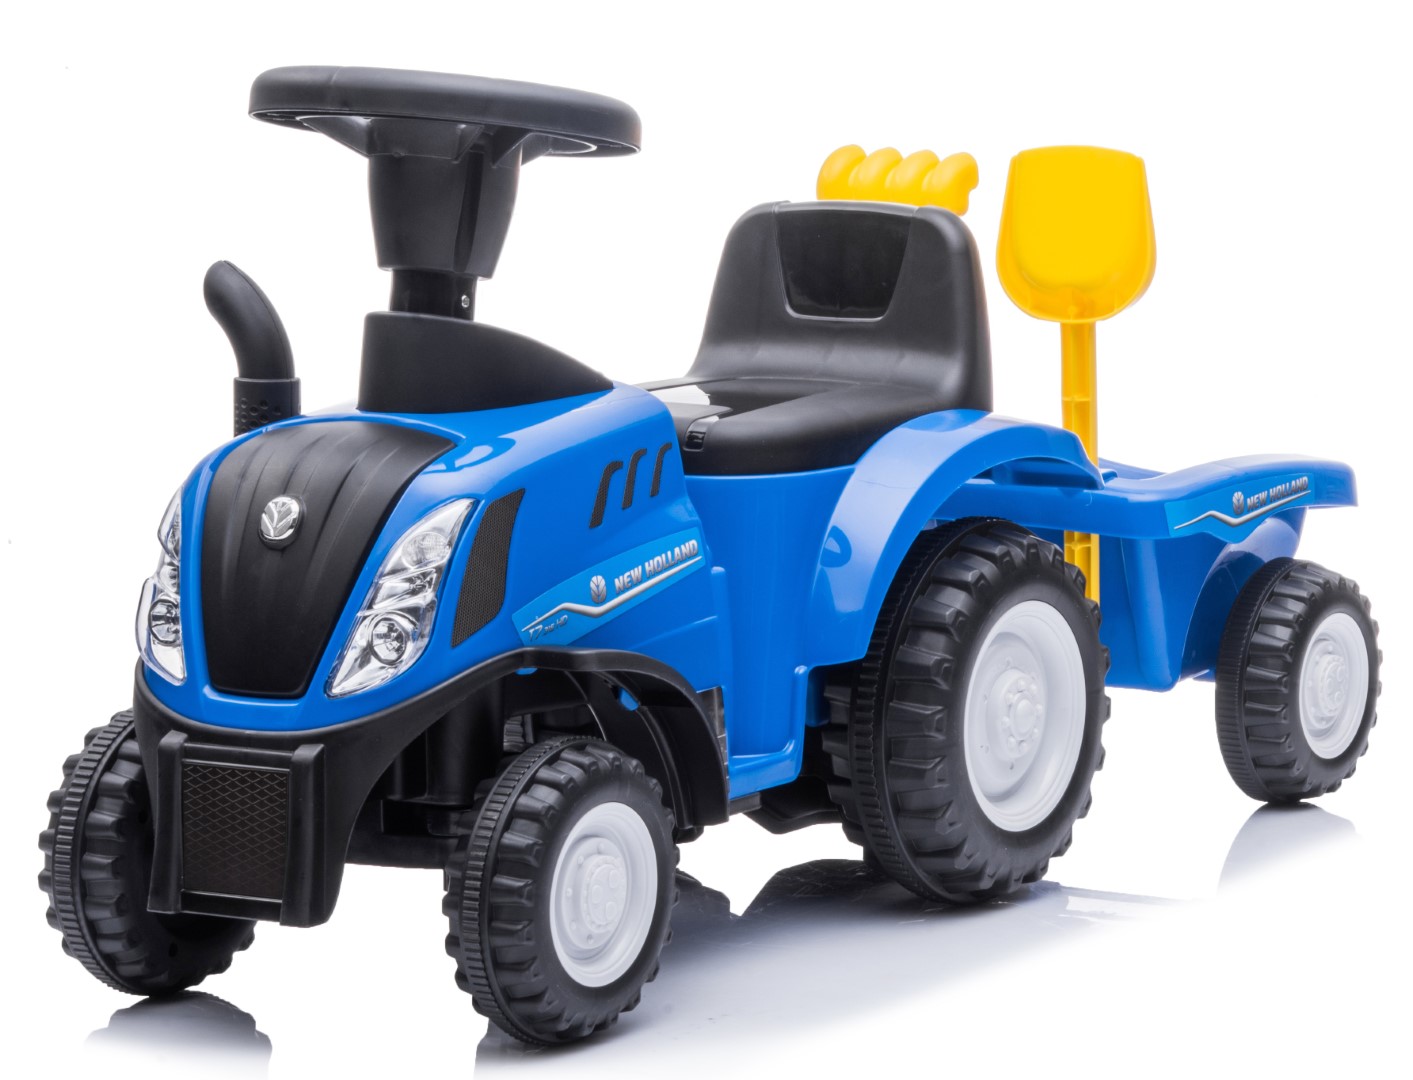 Billede af New Holland T7 Gå-Traktor med Trailer og værktøj, Blå